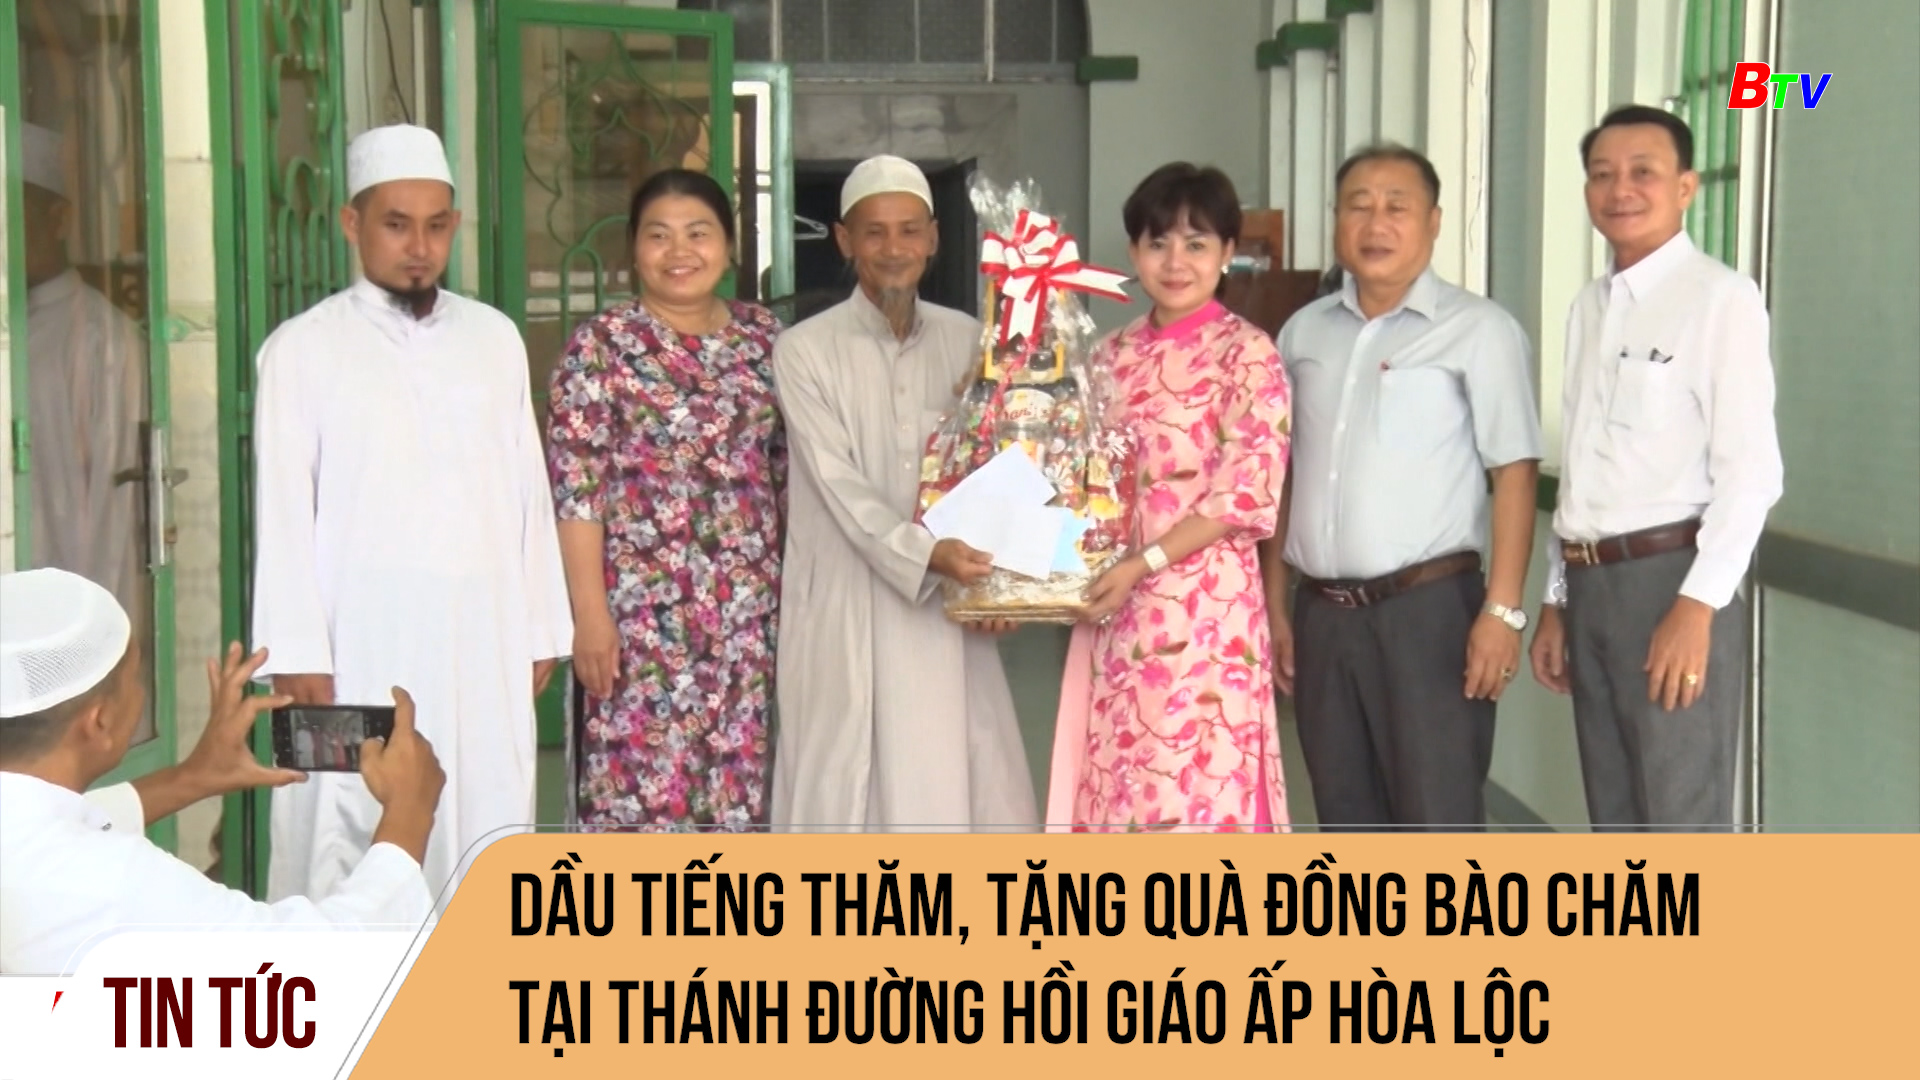 Dầu Tiếng thăm, tặng quà đồng bào Chăm tại thánh đường Hồi giáo ấp Hòa Lộc